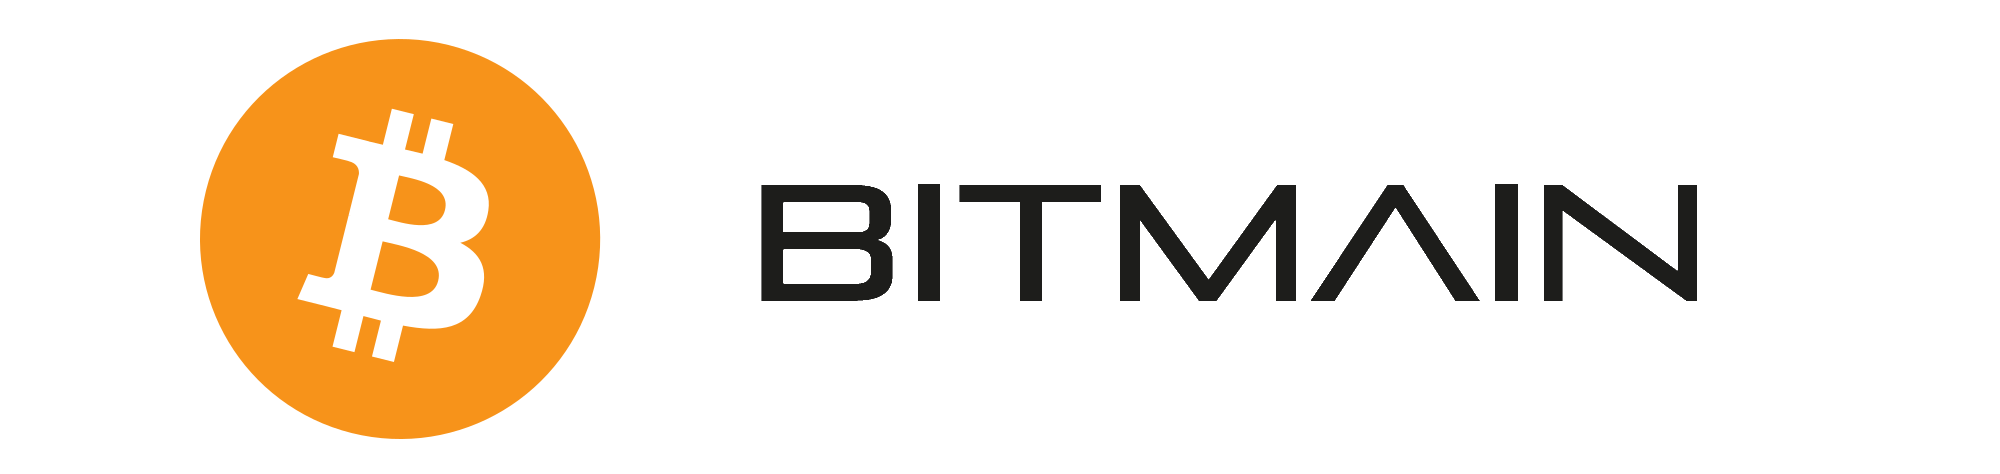 Bitmain Logo and Bitcoin Logo